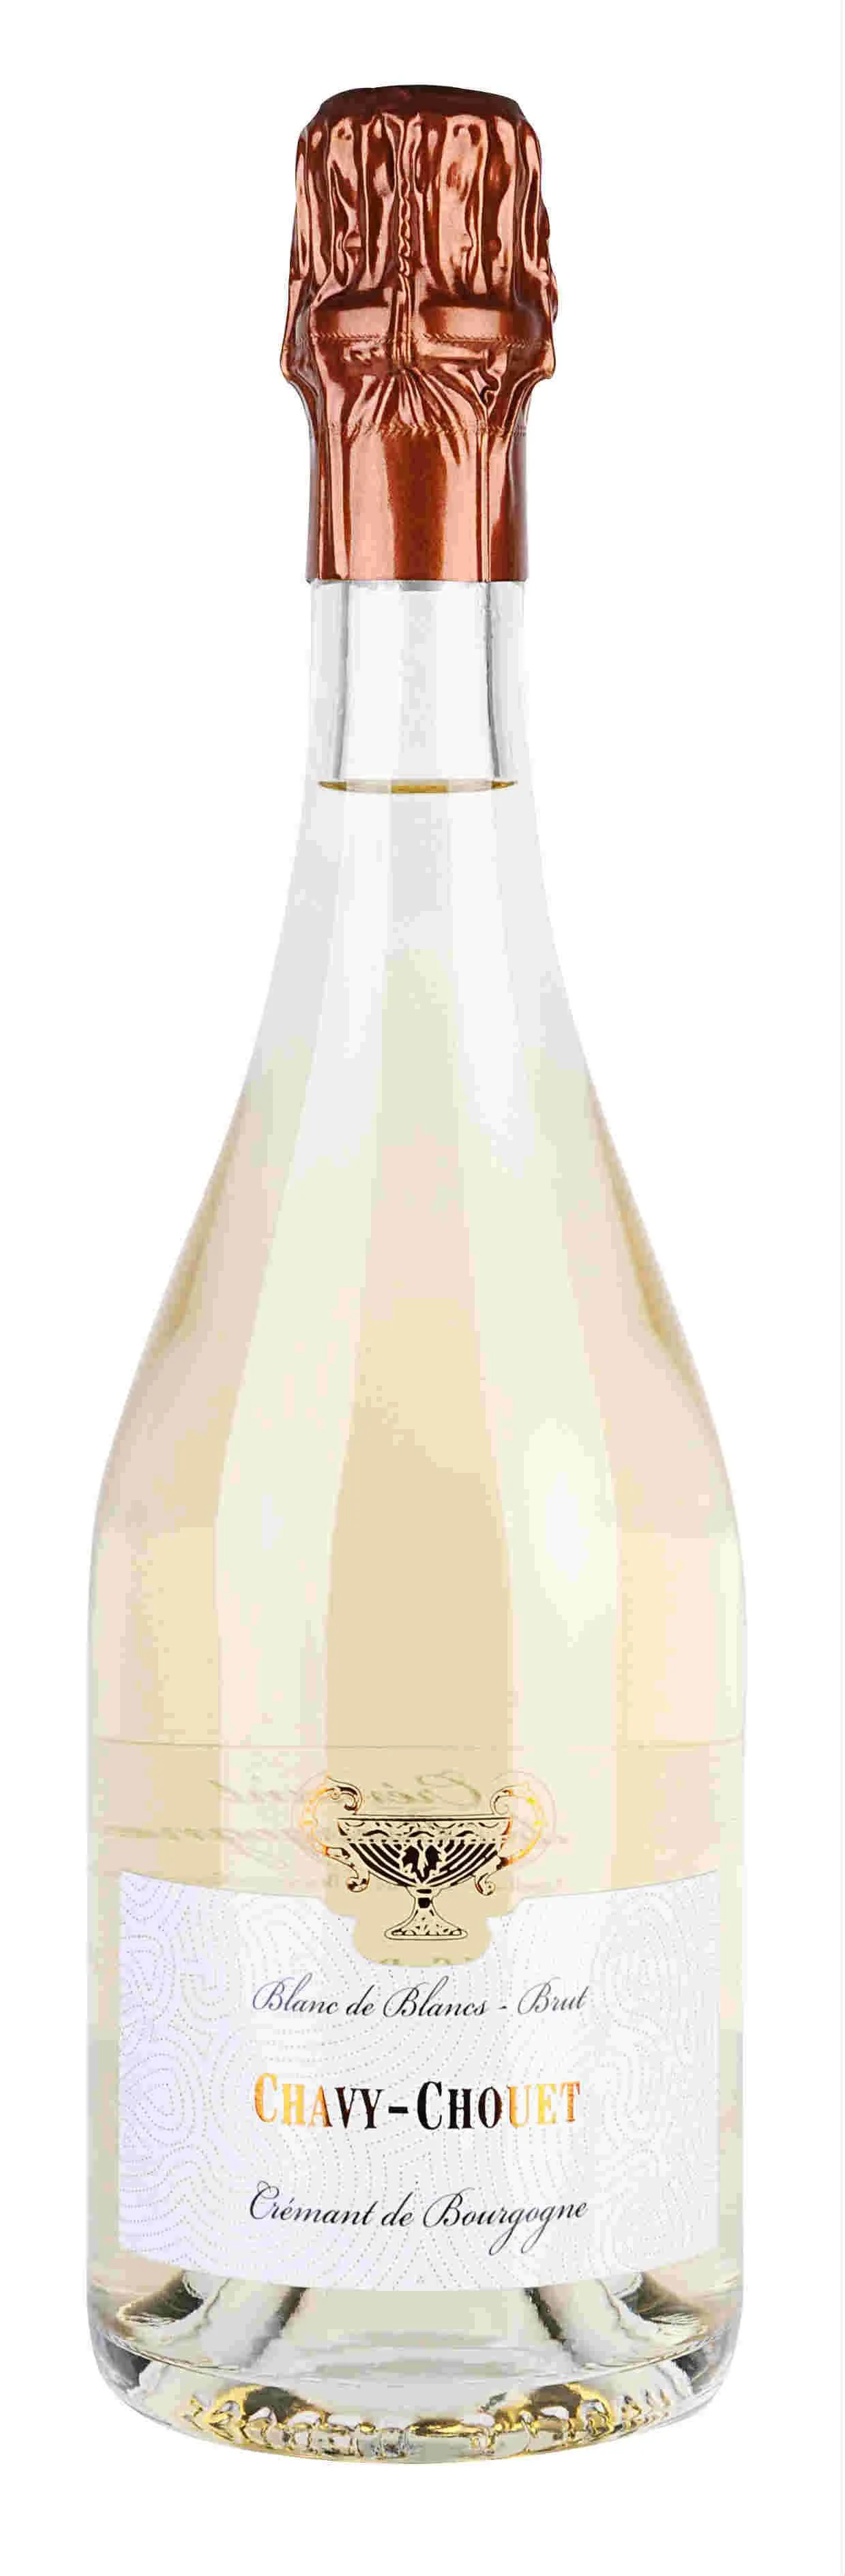 Bottle of Chavy-Chouet Blanc de Blancs Crémant de Bourgogne Brutwith label visible